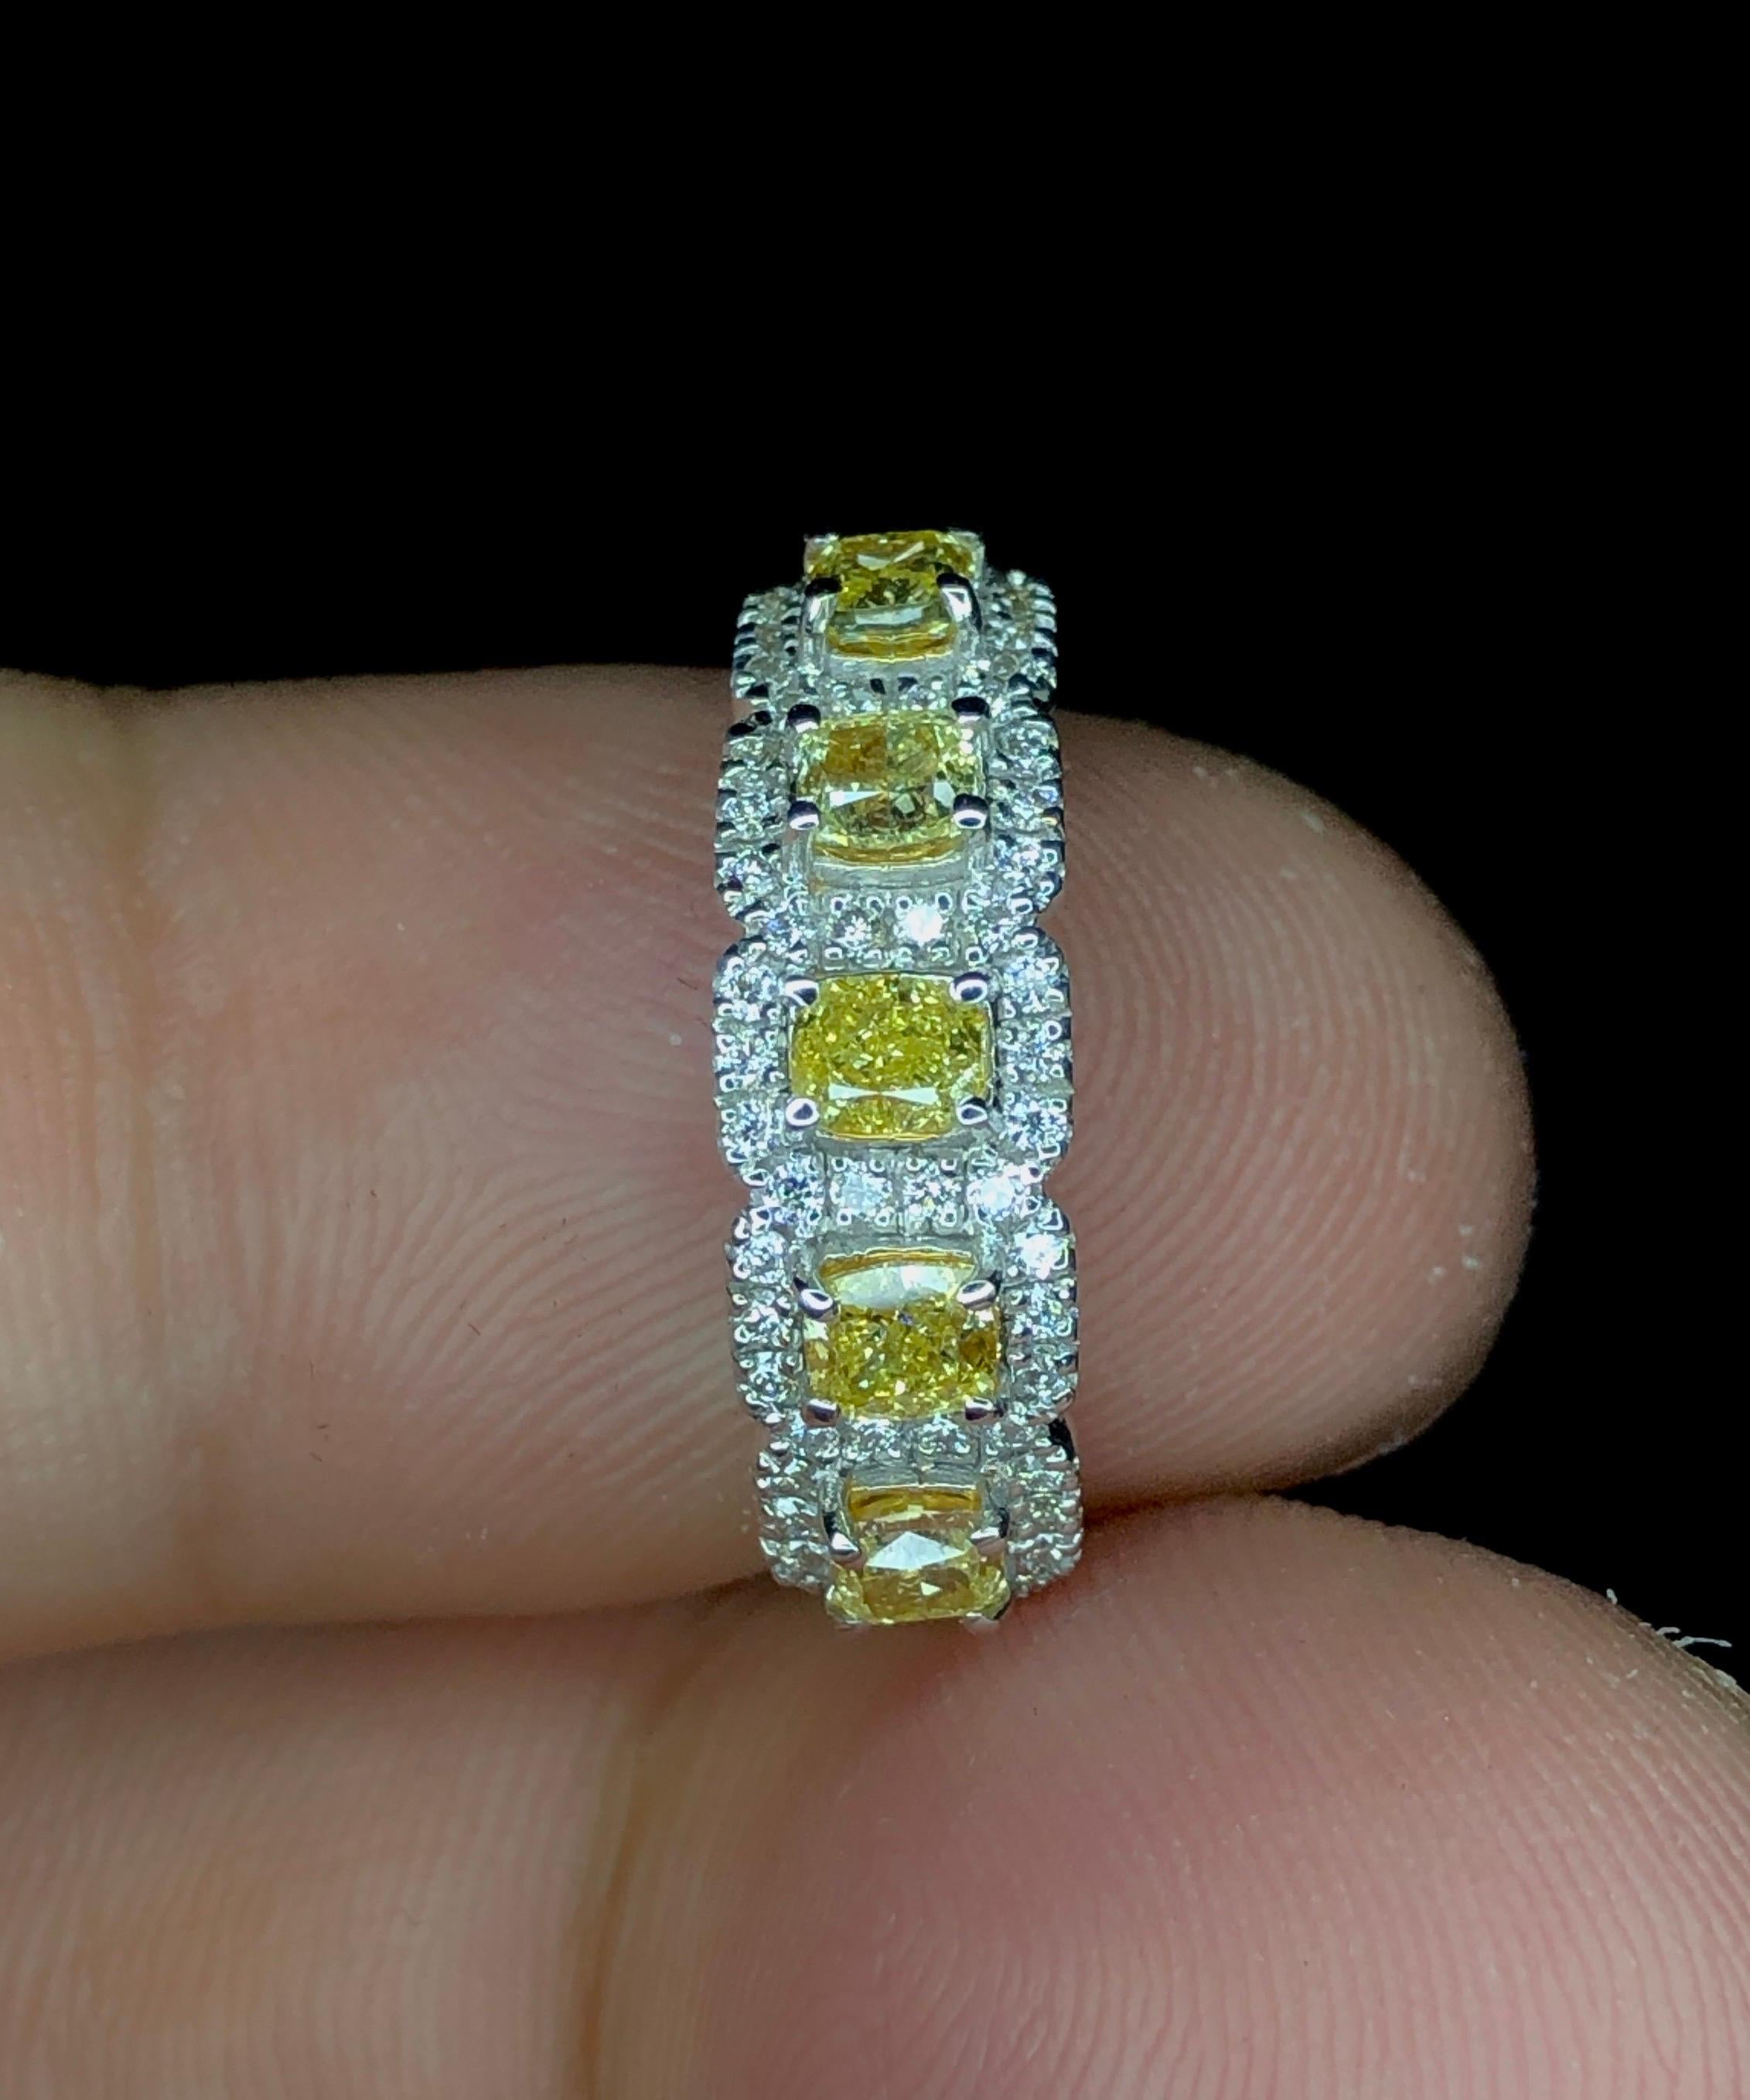 Wir stellen Ihnen unseren exquisiten gelb-weißen Diamantring vor! Dieses atemberaubende Schmuckstück aus luxuriösem 18-karätigem Gold besteht aus 5 leuchtend gelben Diamanten von insgesamt 0,96 Karat, die durch 54 strahlend weiße Diamanten von